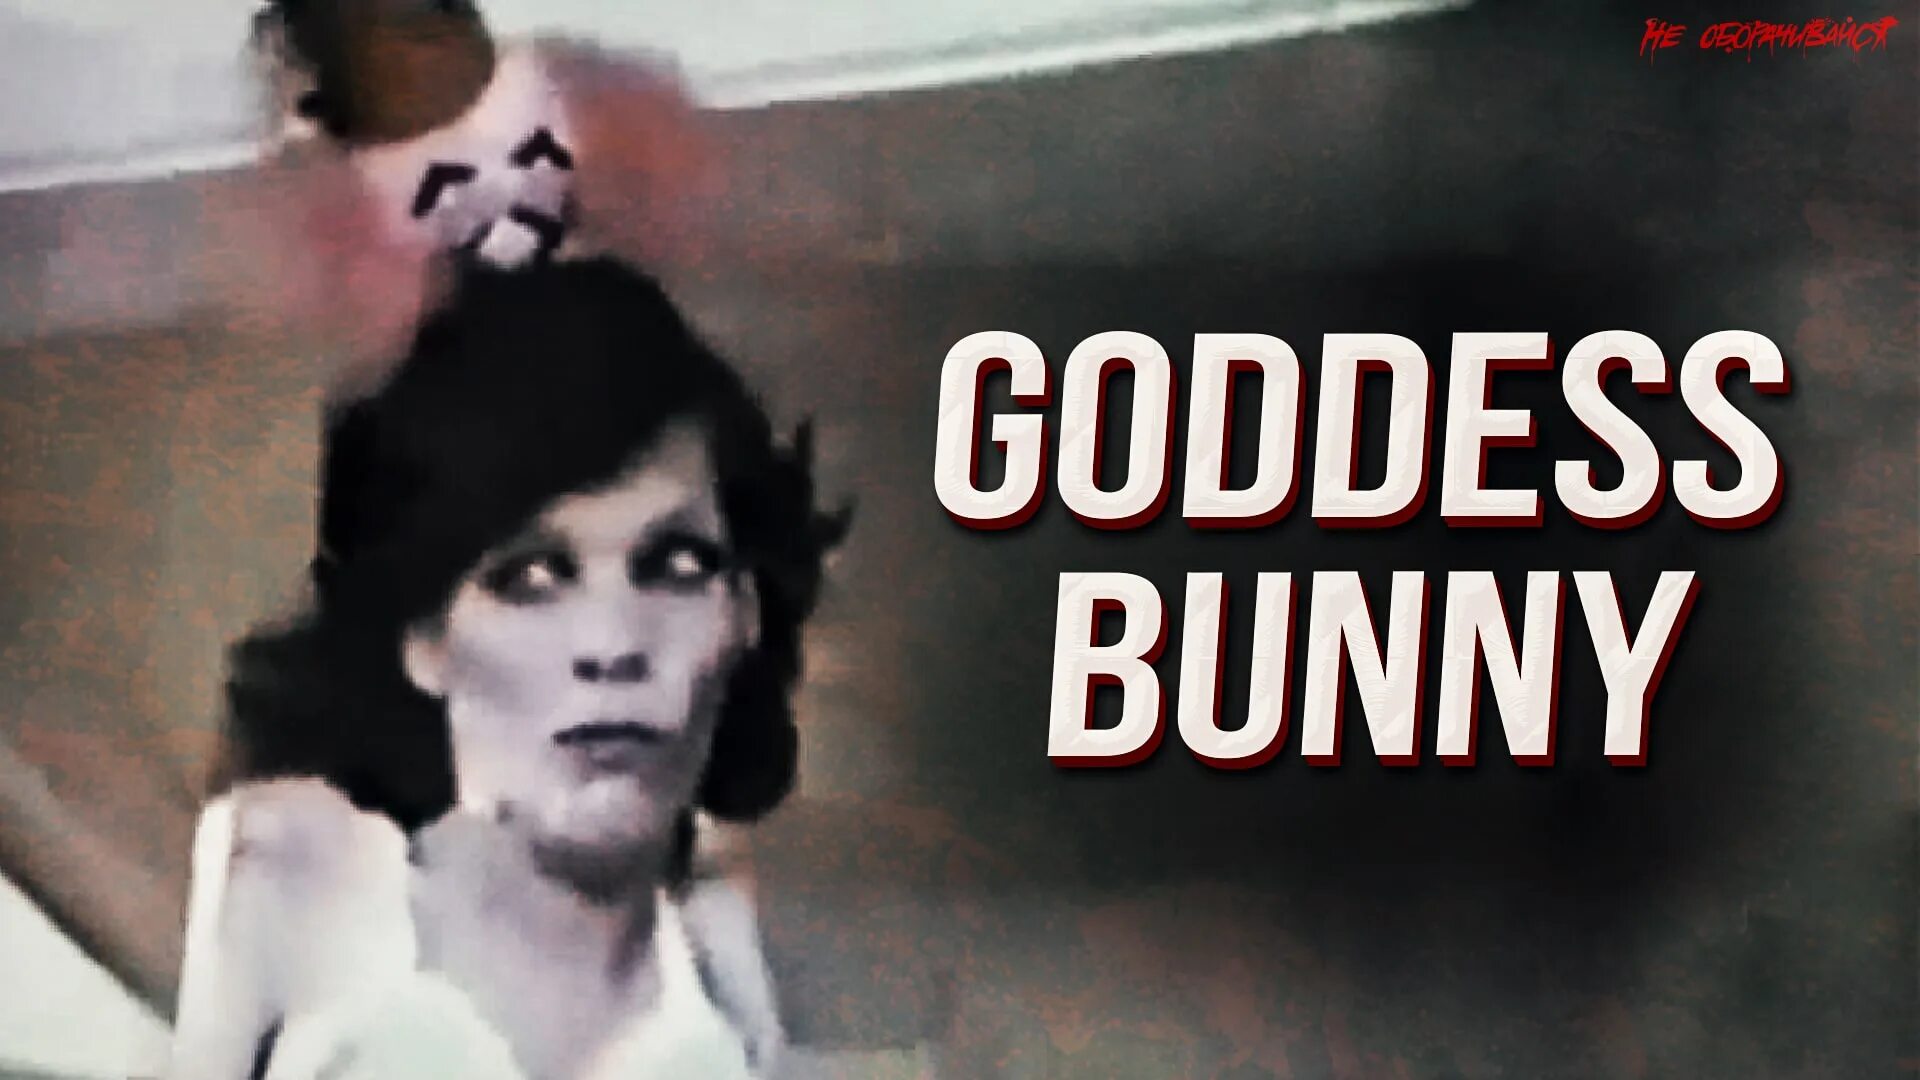 Ксанни банни видео без цензуры. Goddess Bunny 25 Кадр. Goddess Bunny страшное. Джонни байма. Goddess Bunny пугающая женщина.